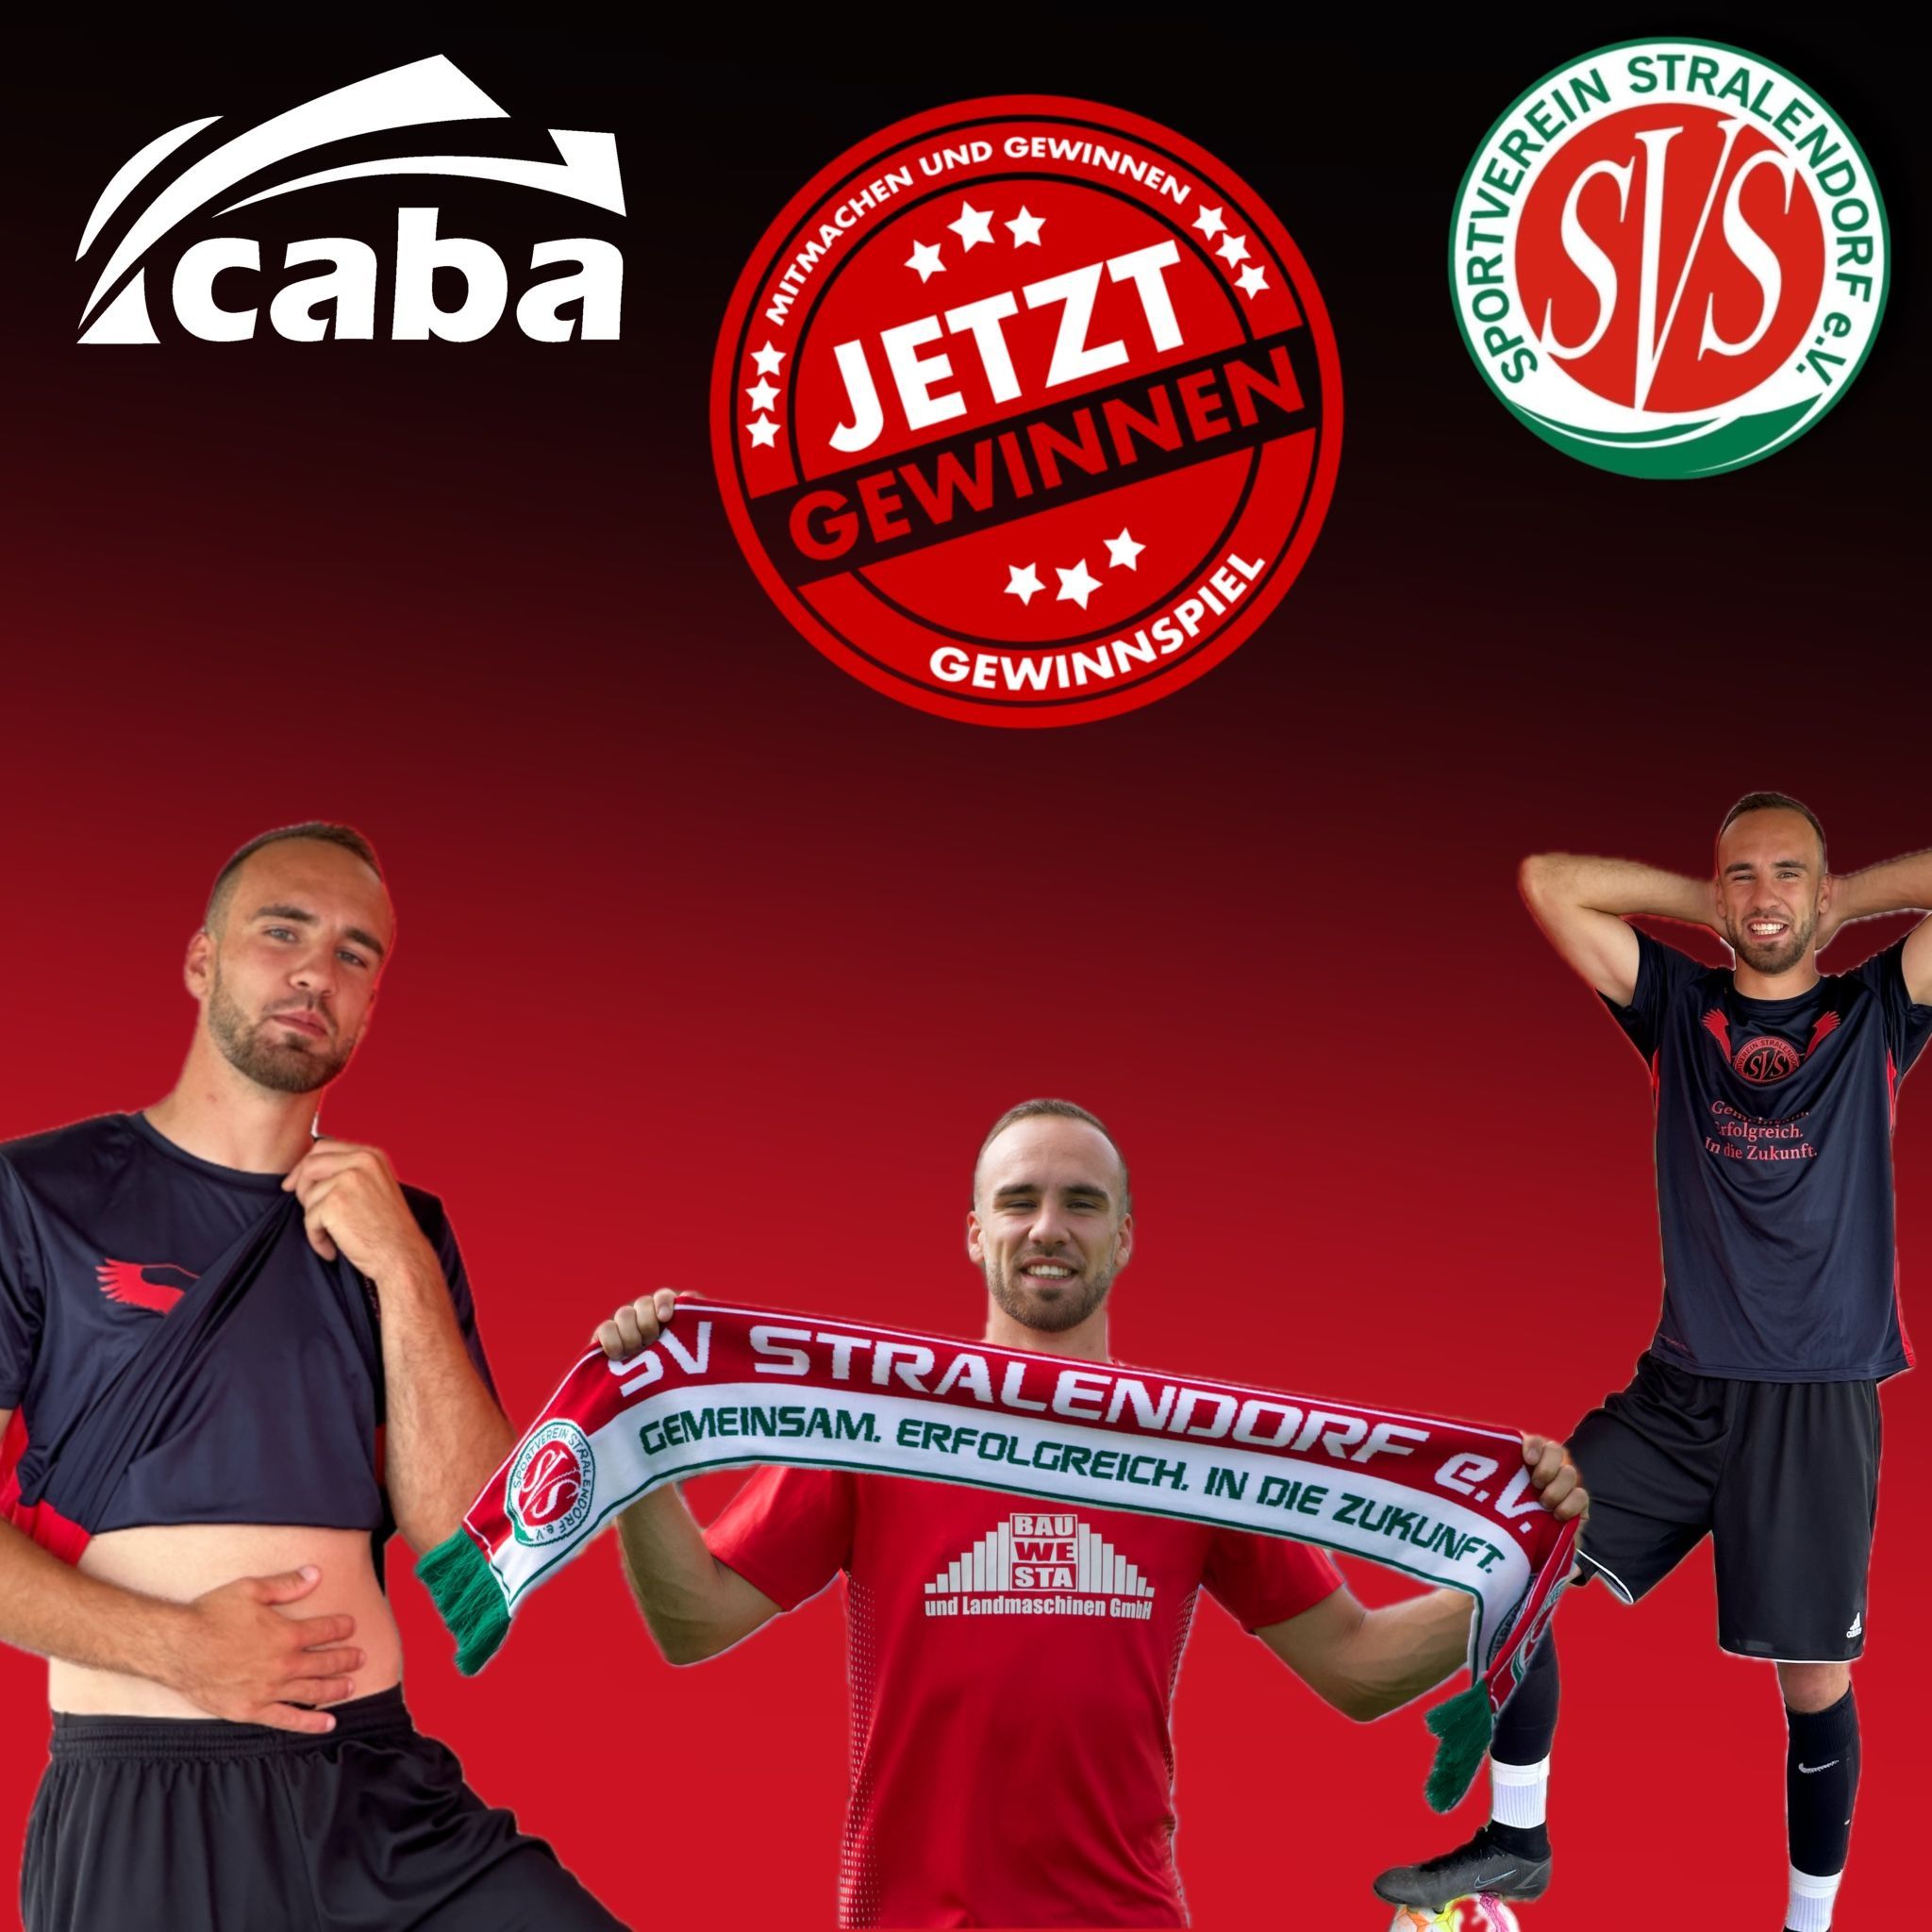 🎉📢 Gewinnspiel-Aufruf vom SV Stralendorf! 📢🎉